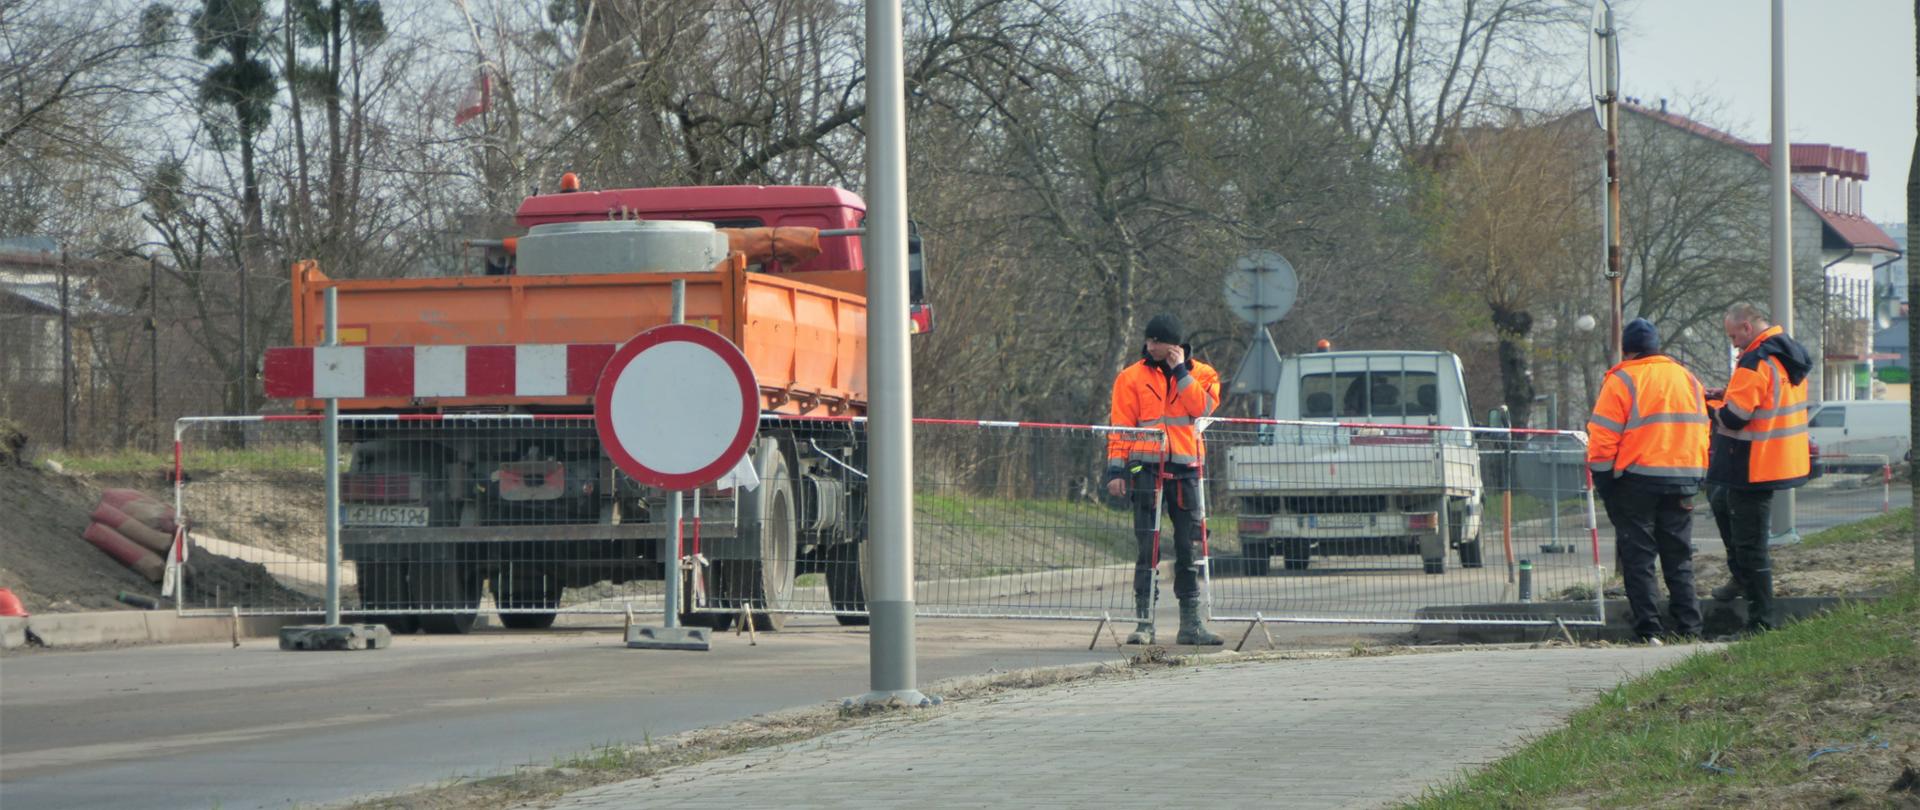 Zdjęcie przedstawia prace drogowe. Na drodze stoi samochód ciężarowy, a przed nim barierki oraz znak zakaz wjazdu. Za barierkami stoją ludzie ubrani w pomarańczowe kamizelki odblaskowe.